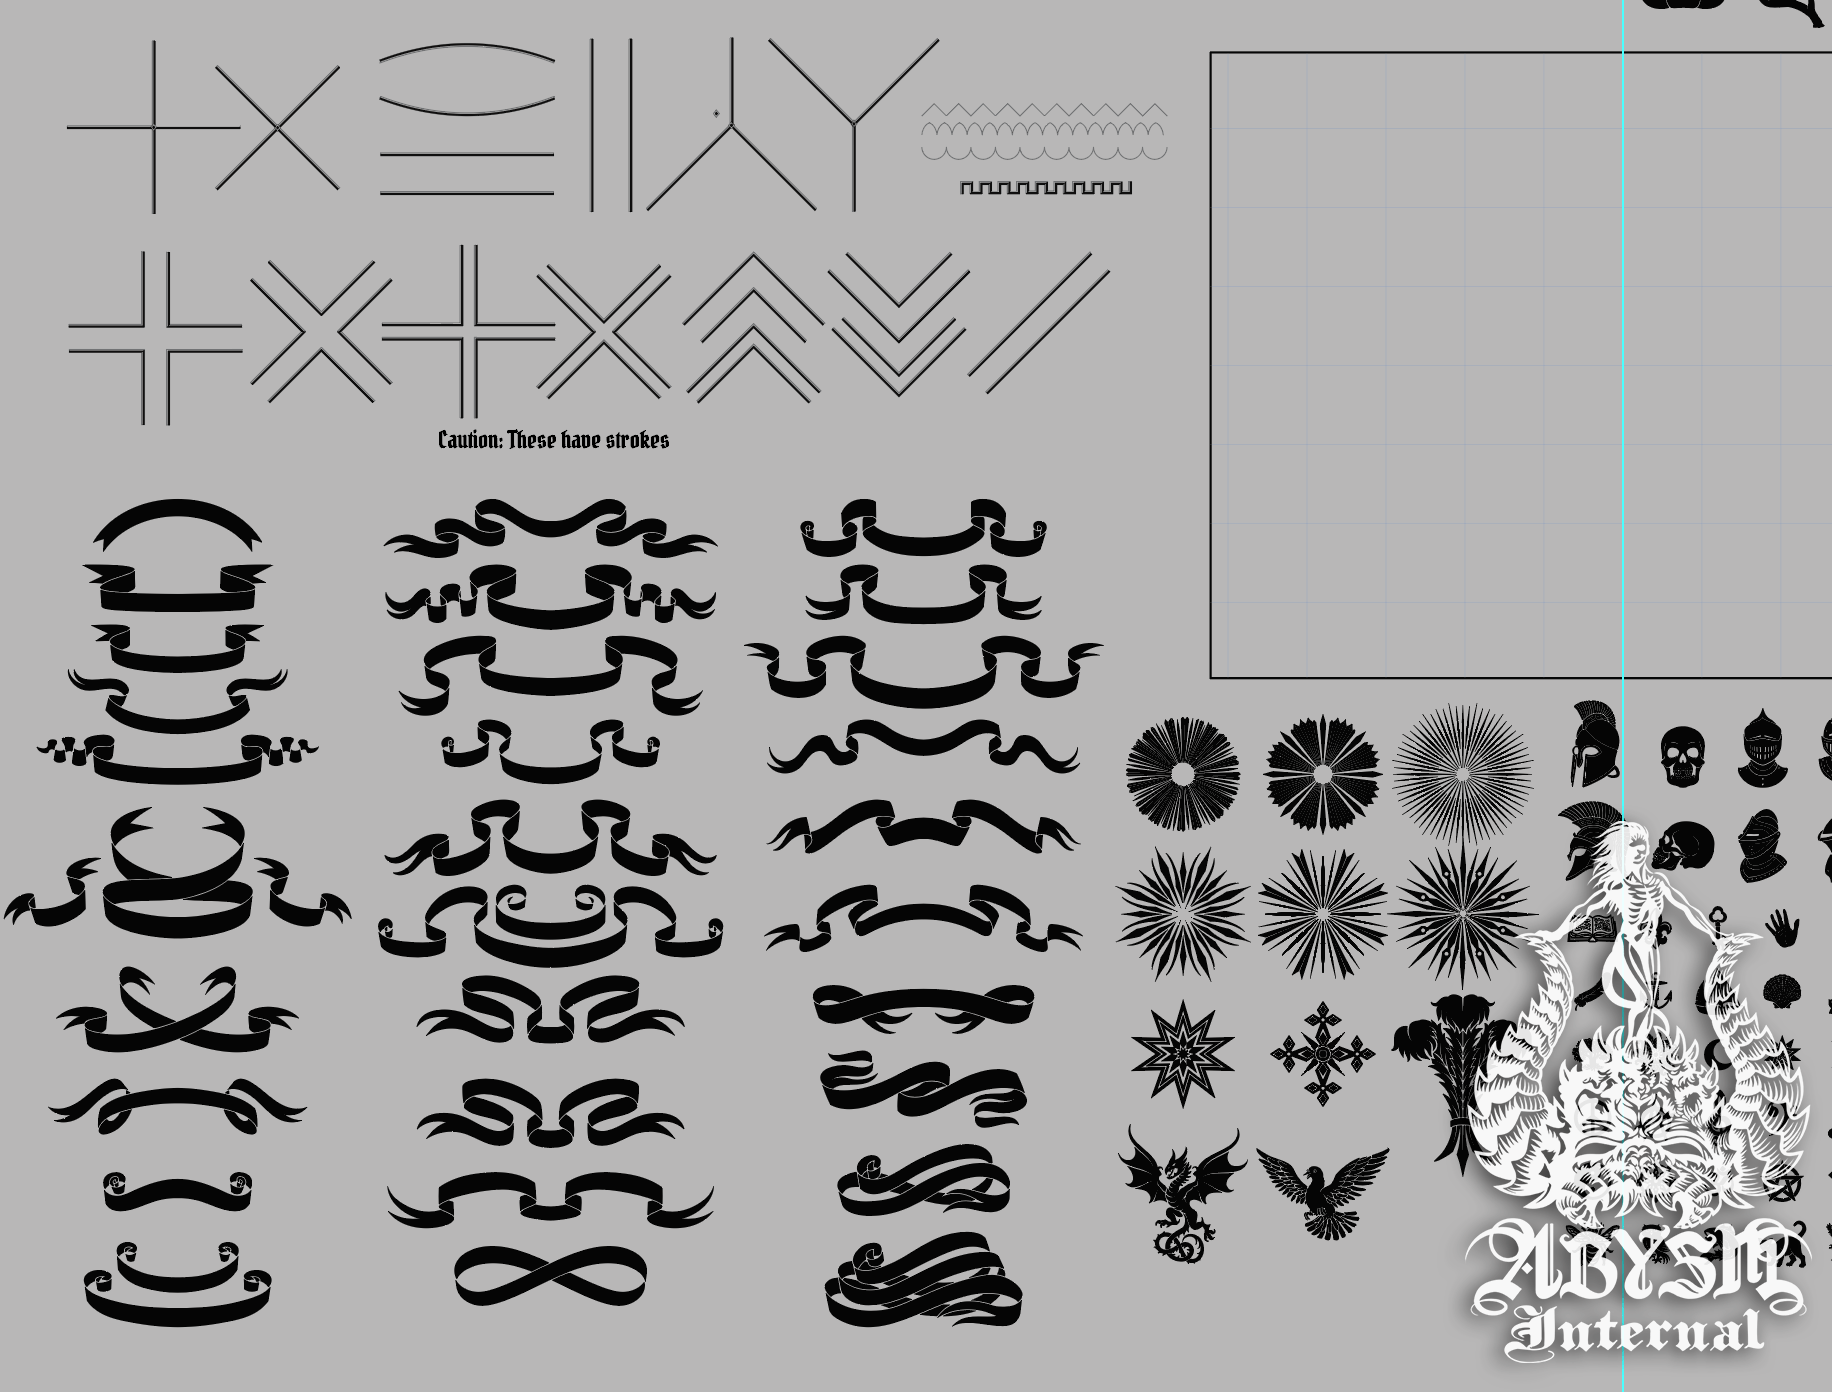 Custom Family Crest Design Set, DIY Coat of Arms Creation Kit, Modern Emblem Logo Vector Art - Download at Abysm Internal